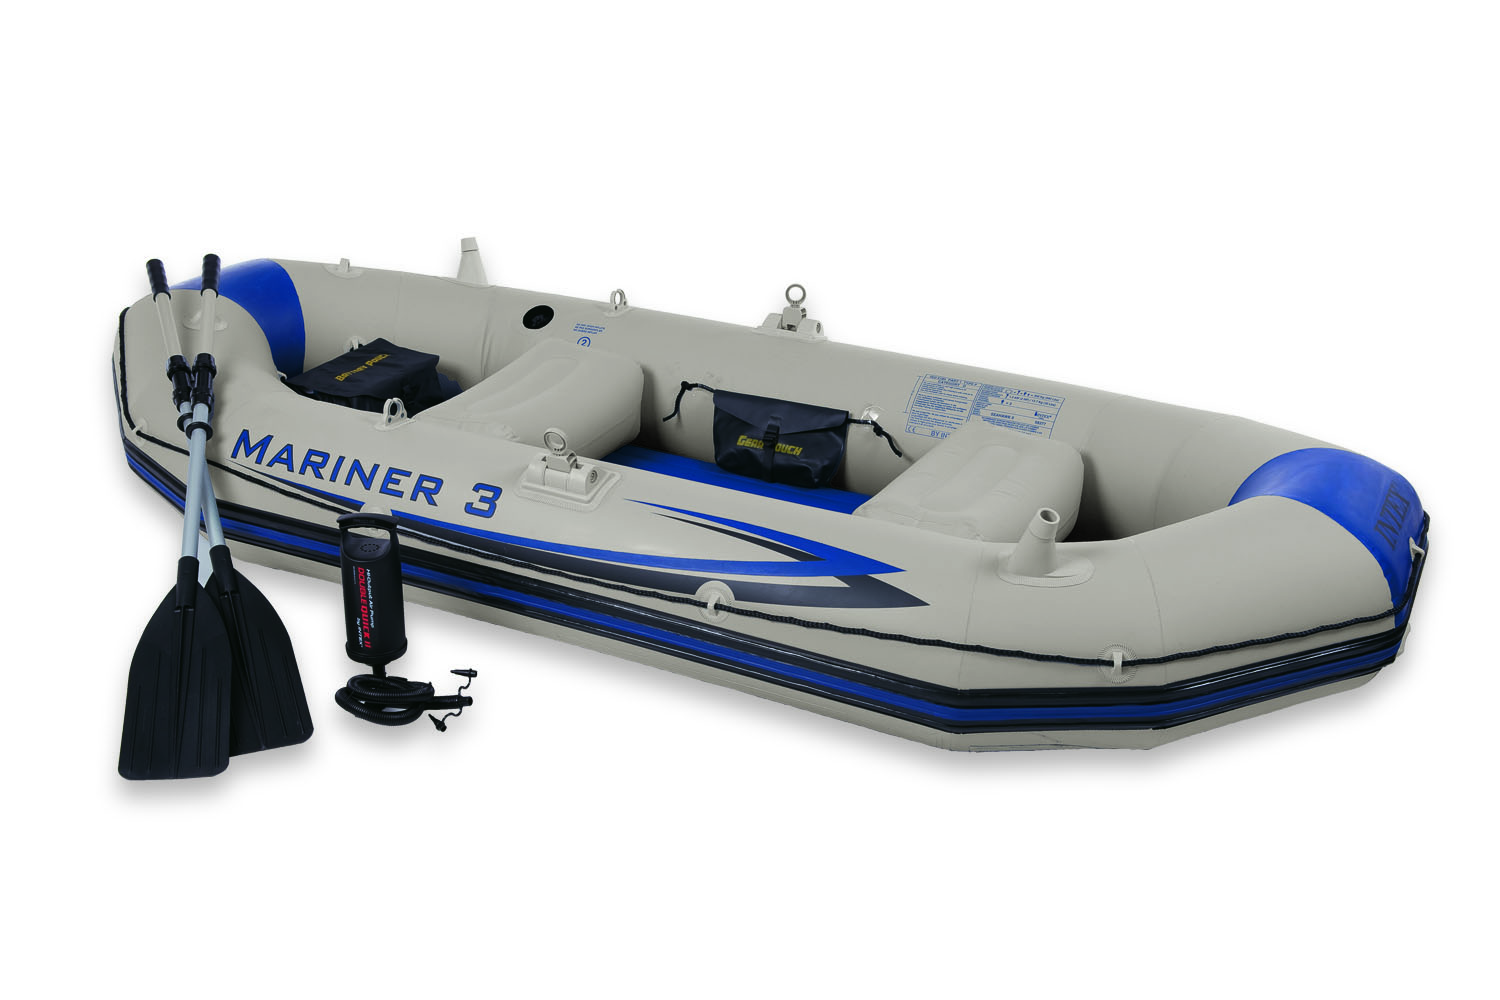 قایق بادی مارینر3 (mariner3) ، فروش قایق بادی مارینر3 (mariner3) ،خرید قایق بادی مارینر3 (mariner3) ، فروش اینترنتی قایق بادی مارینر3 (mariner3) ، خرید اینترنتی قایق بادی مارینر3 (mariner3)  .